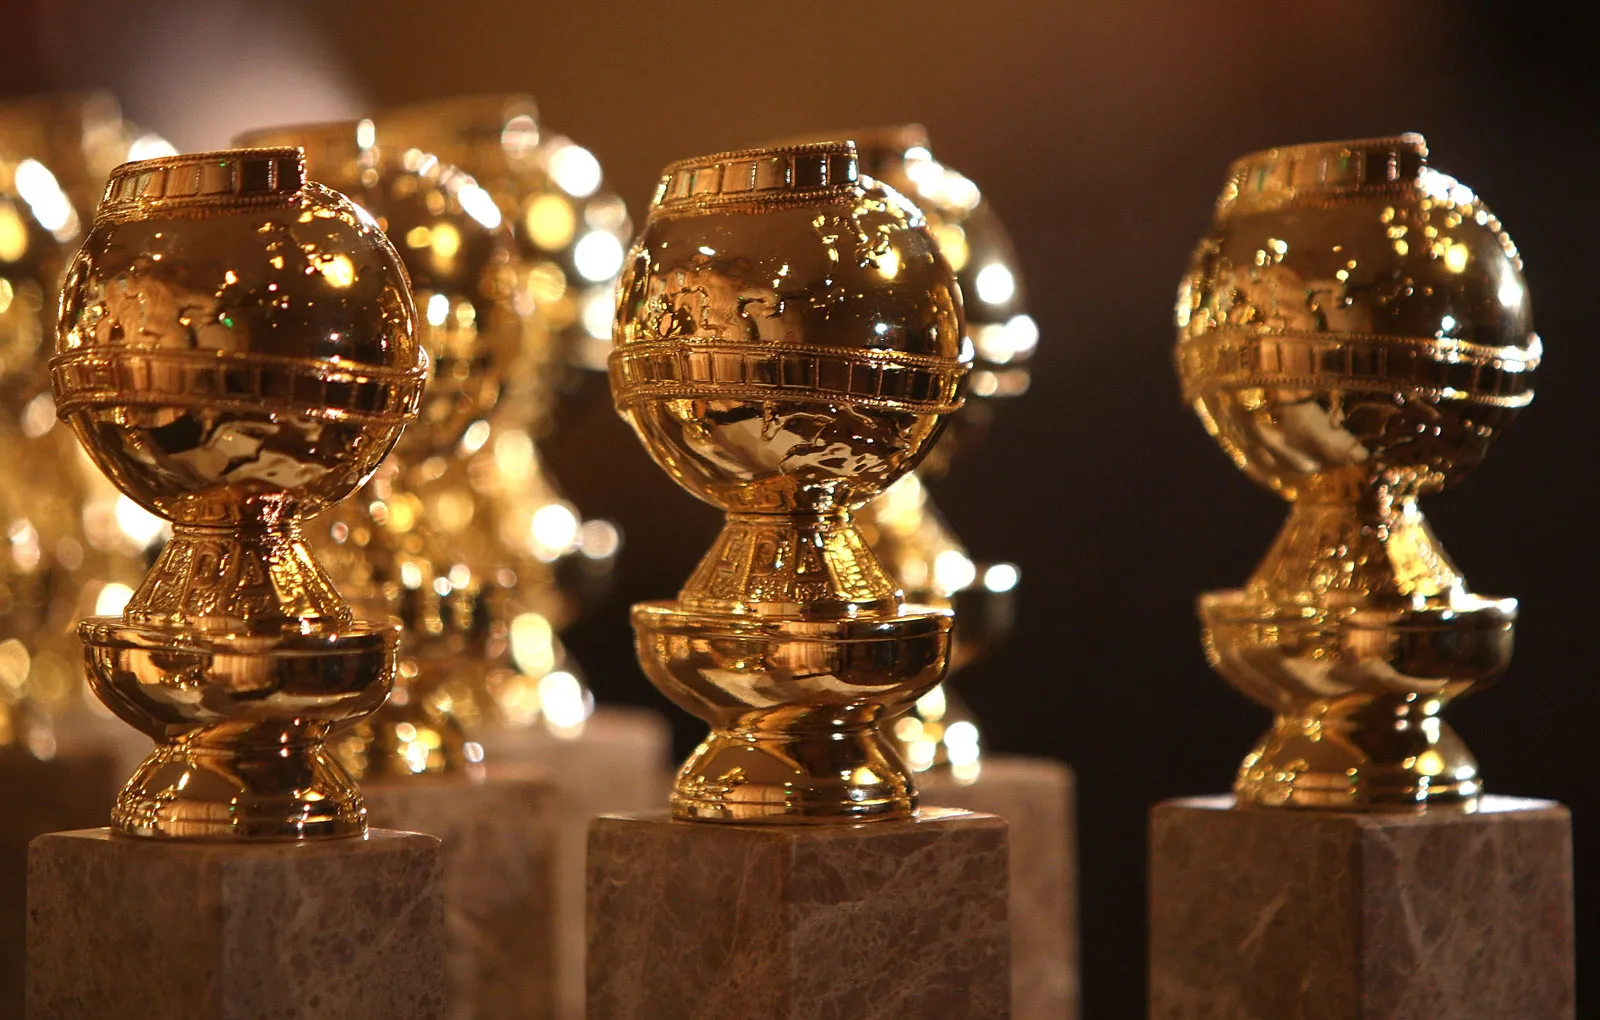  Golden-Globes-Awards Les Golden Globes Awards 